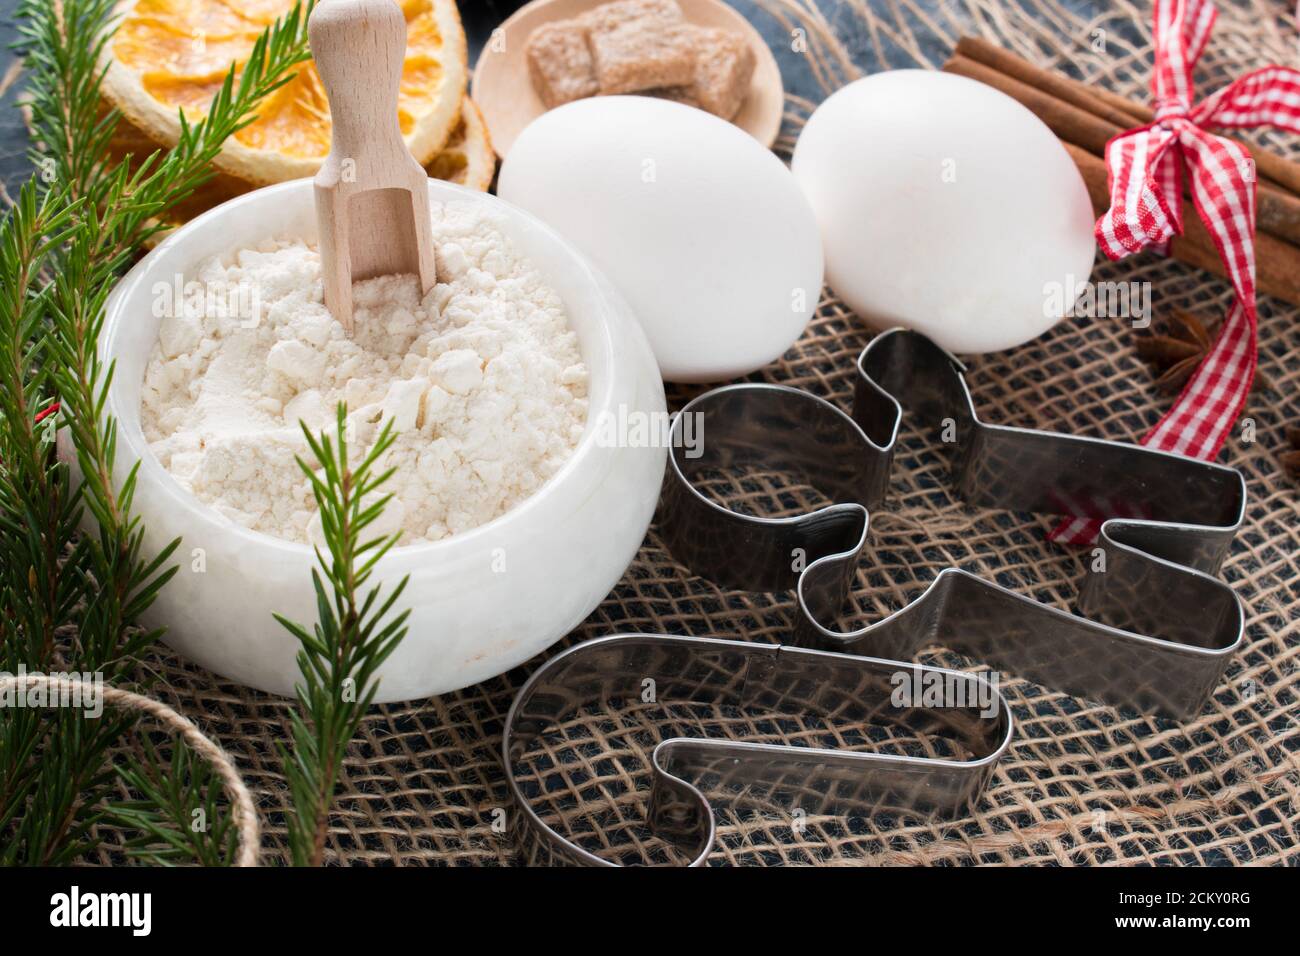 Metall-Ausstechformen und Kochzutaten. Mehl und Eier sind auf einer Serviette. Weihnachtsessen. Stockfoto